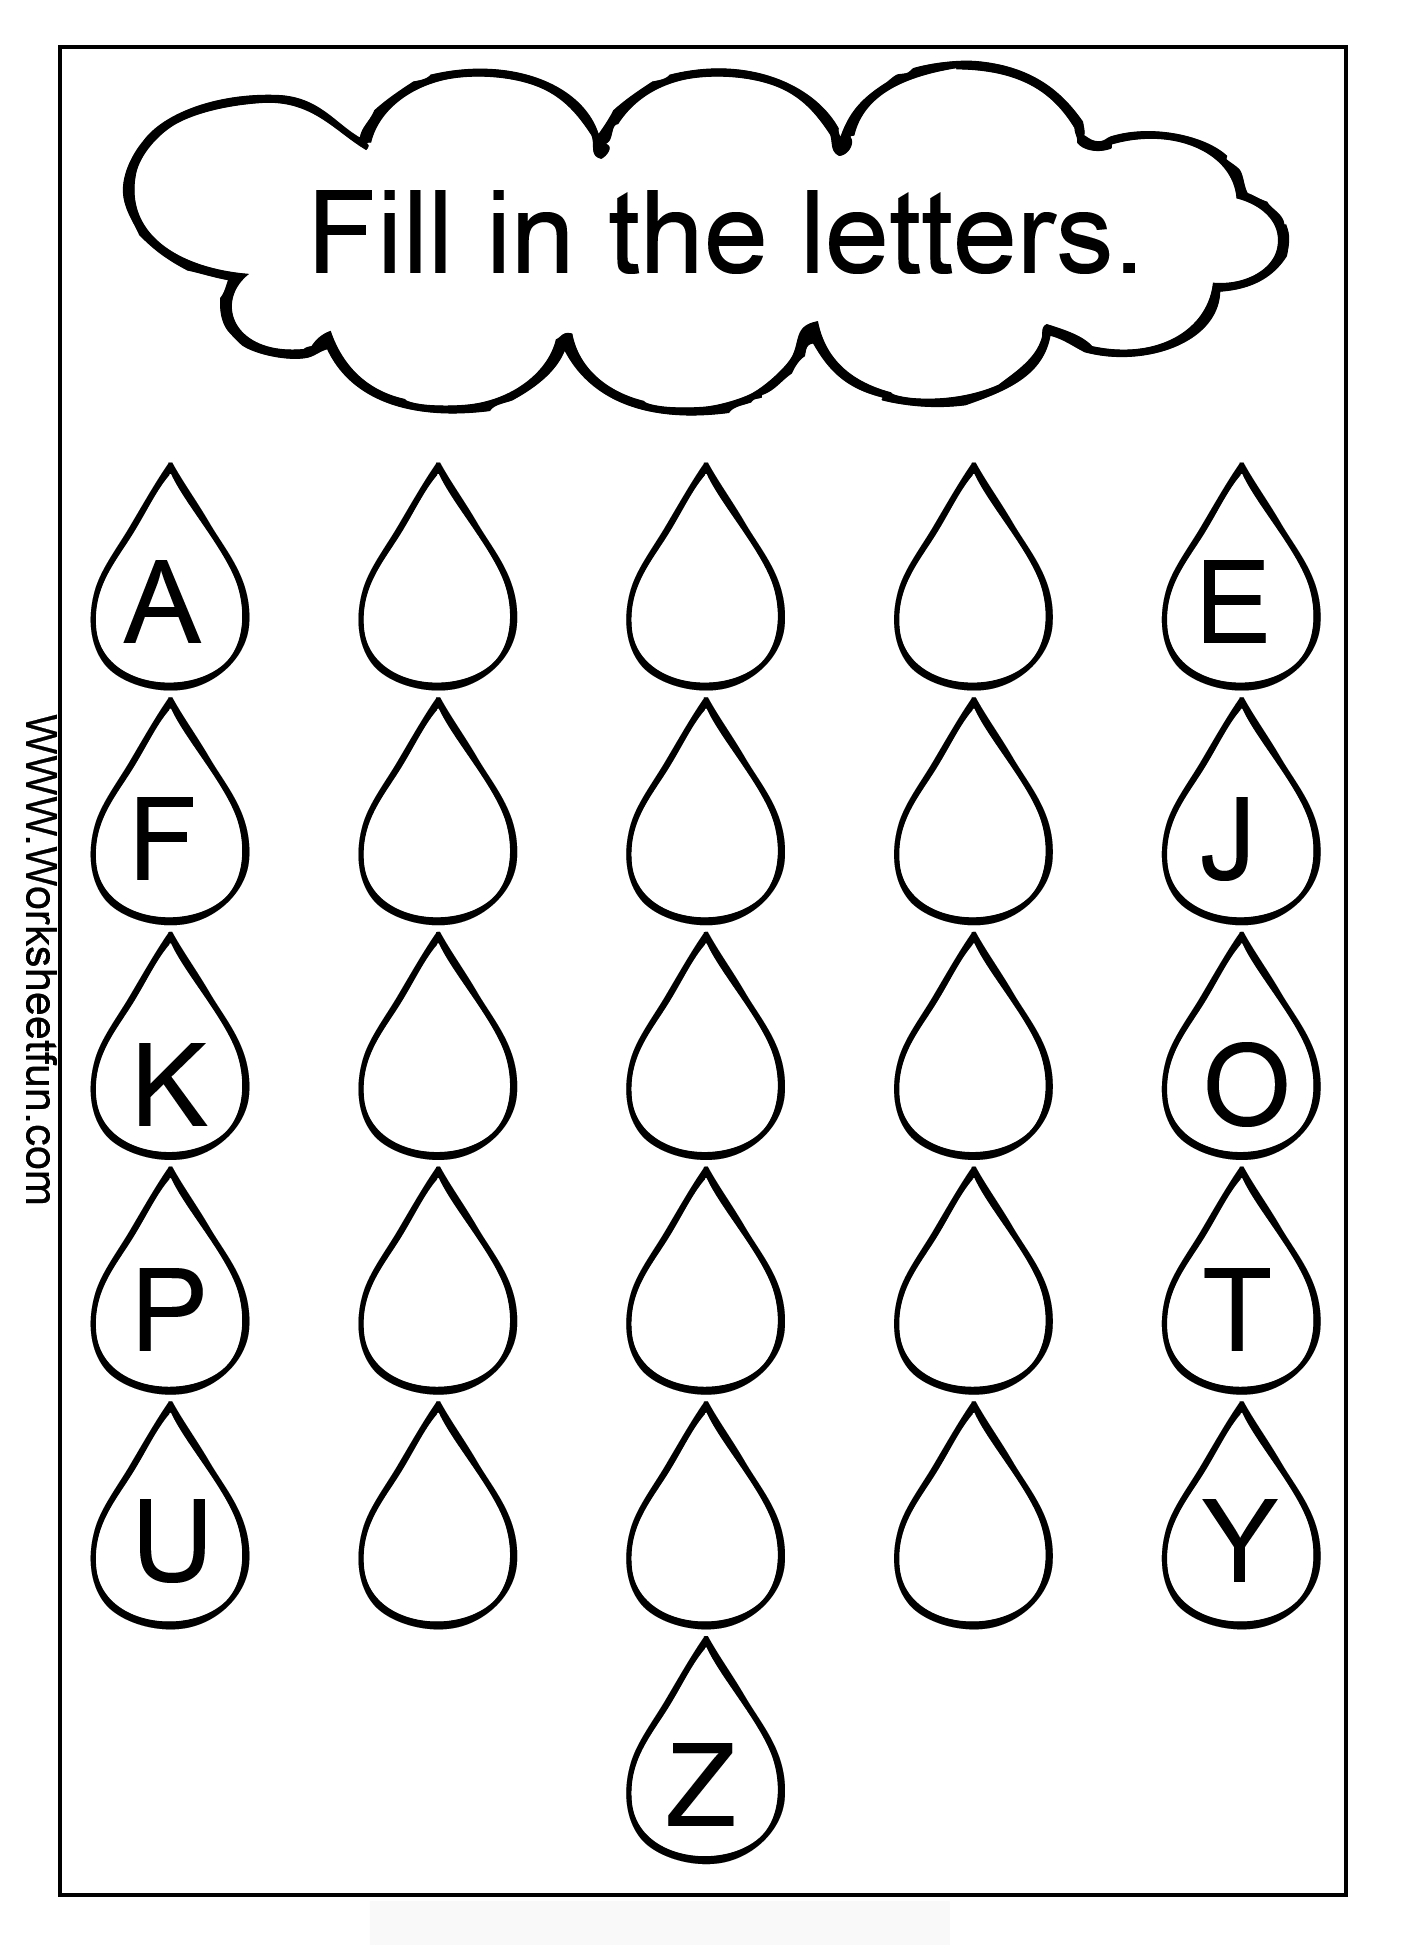 Worksheets. 1St Grade Alphabet Worksheets. Waytoohuman Free intended for Free Alphabet Worksheets For 1St Grade